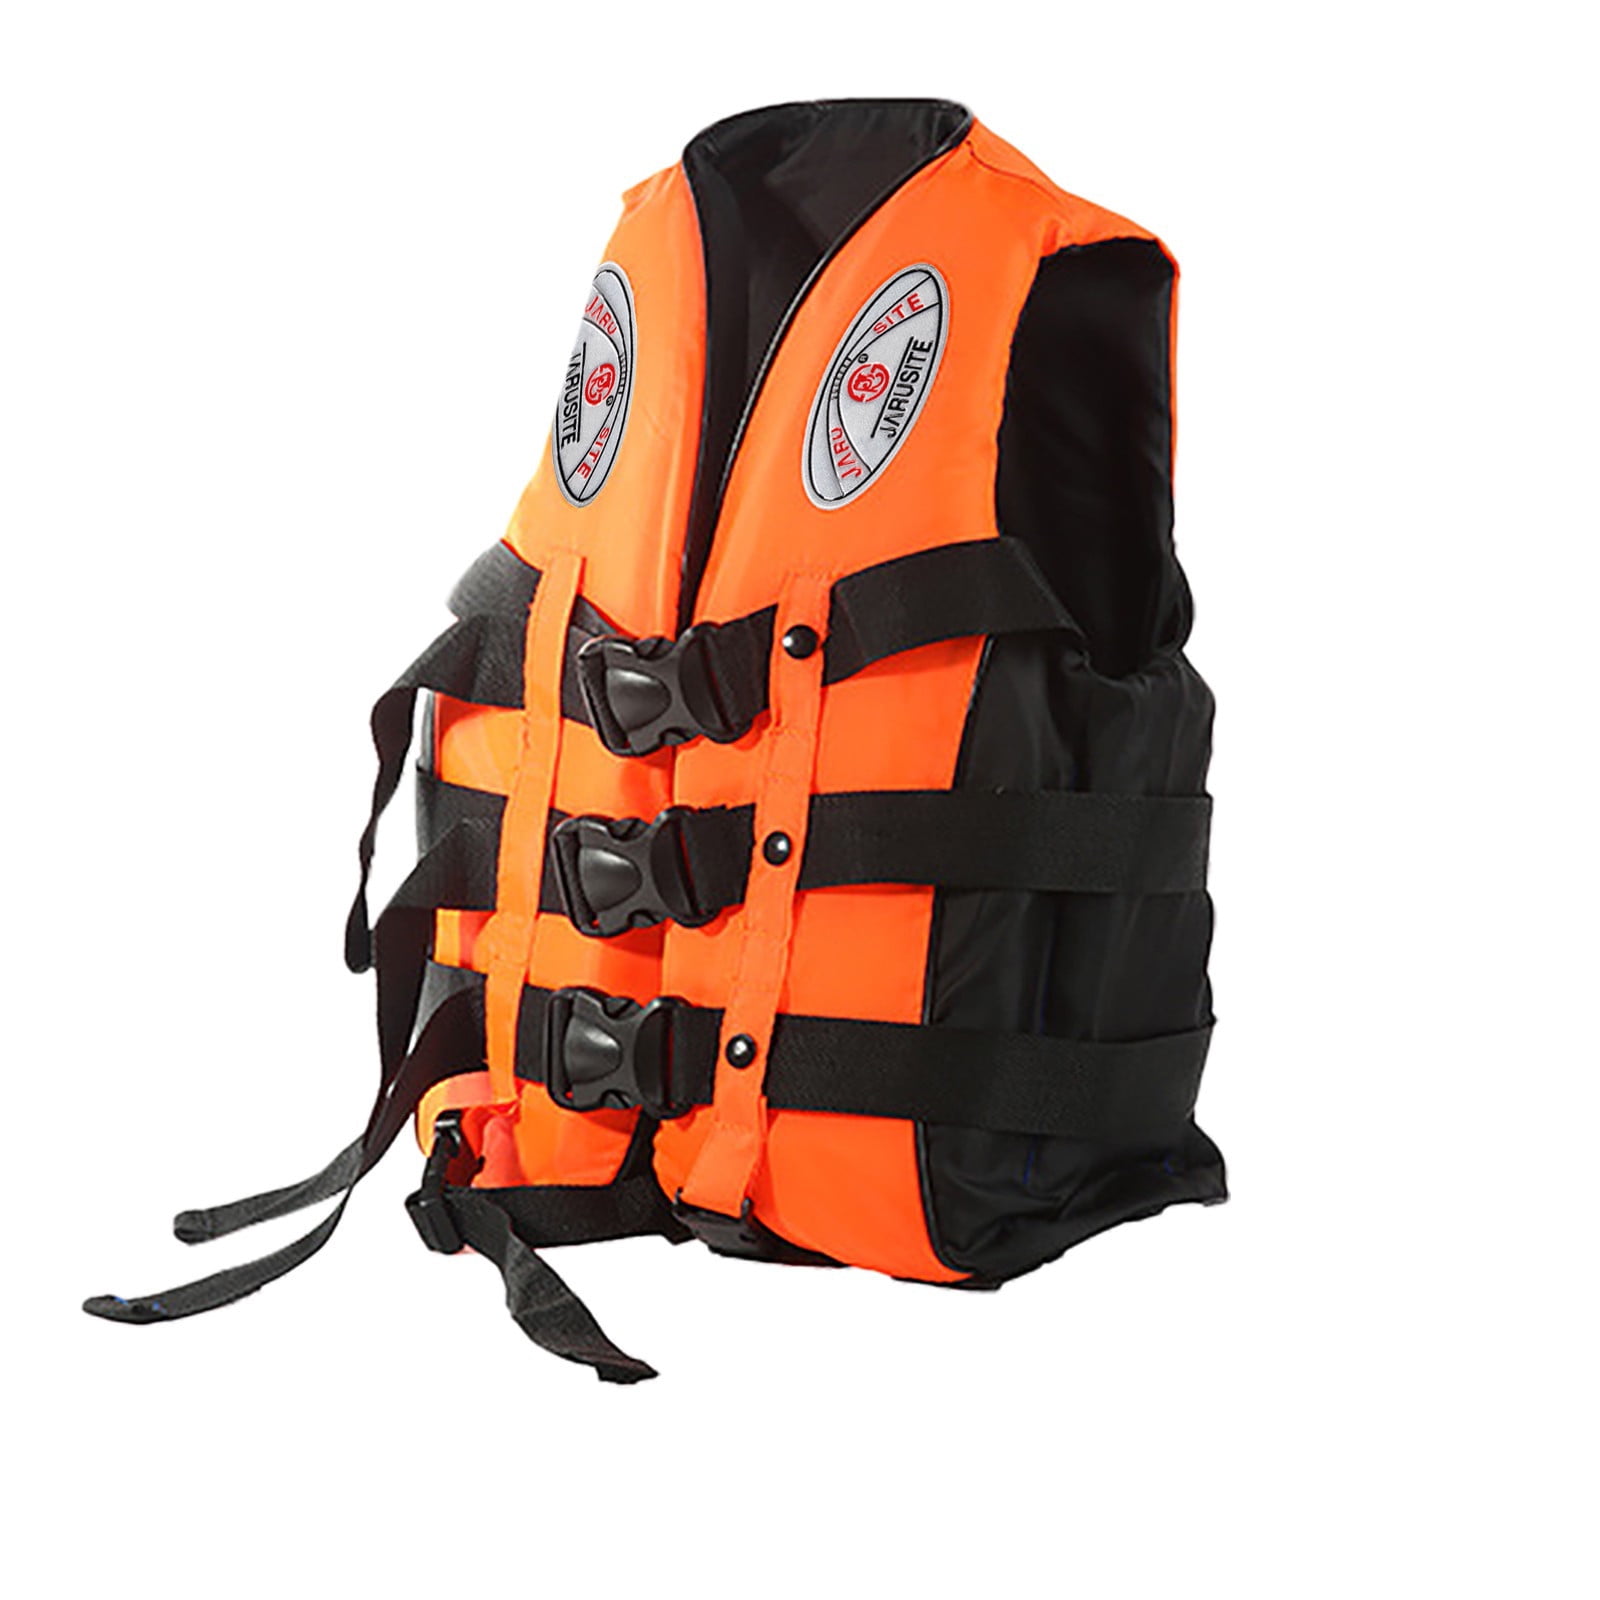 Safety Adult Buoyancy Aid Vest Sailing Kayak Fishing Life Jacket Free Shipping 